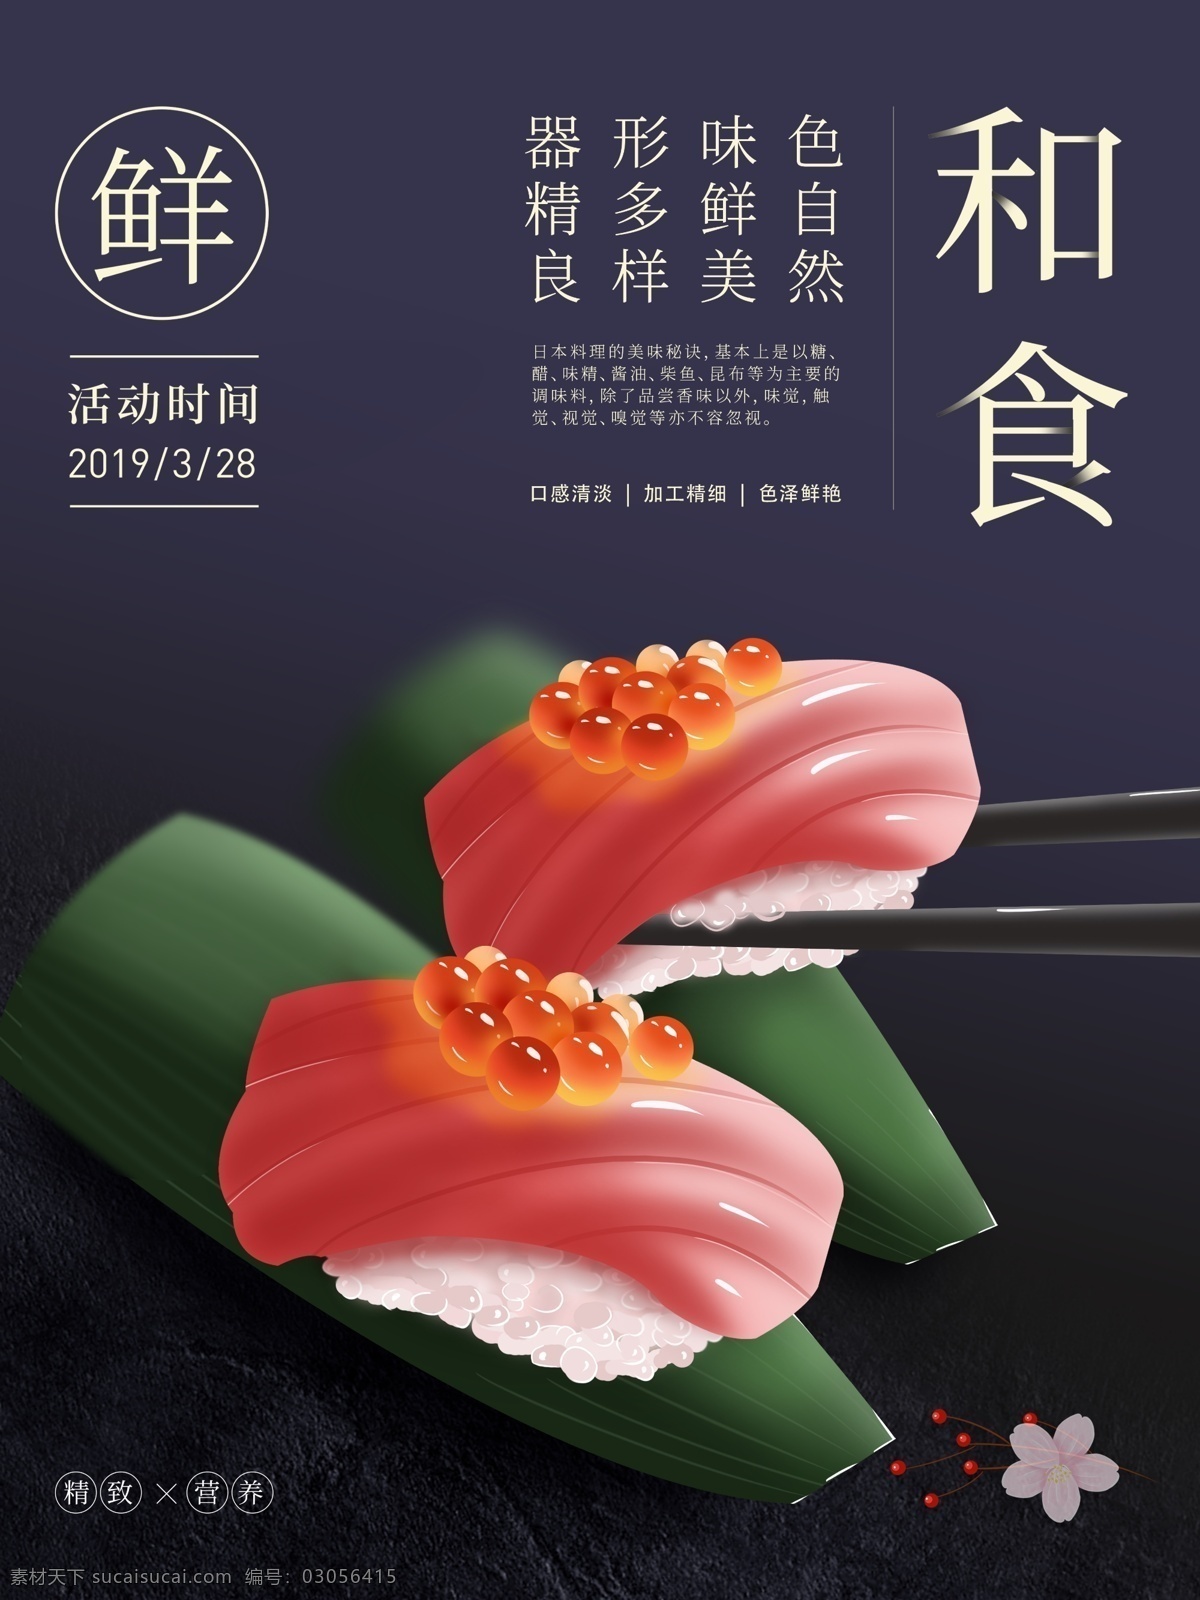 原创 插画 日本 寿司 美食 海报 和食 简约 鱼子酱 各色 主题 排版